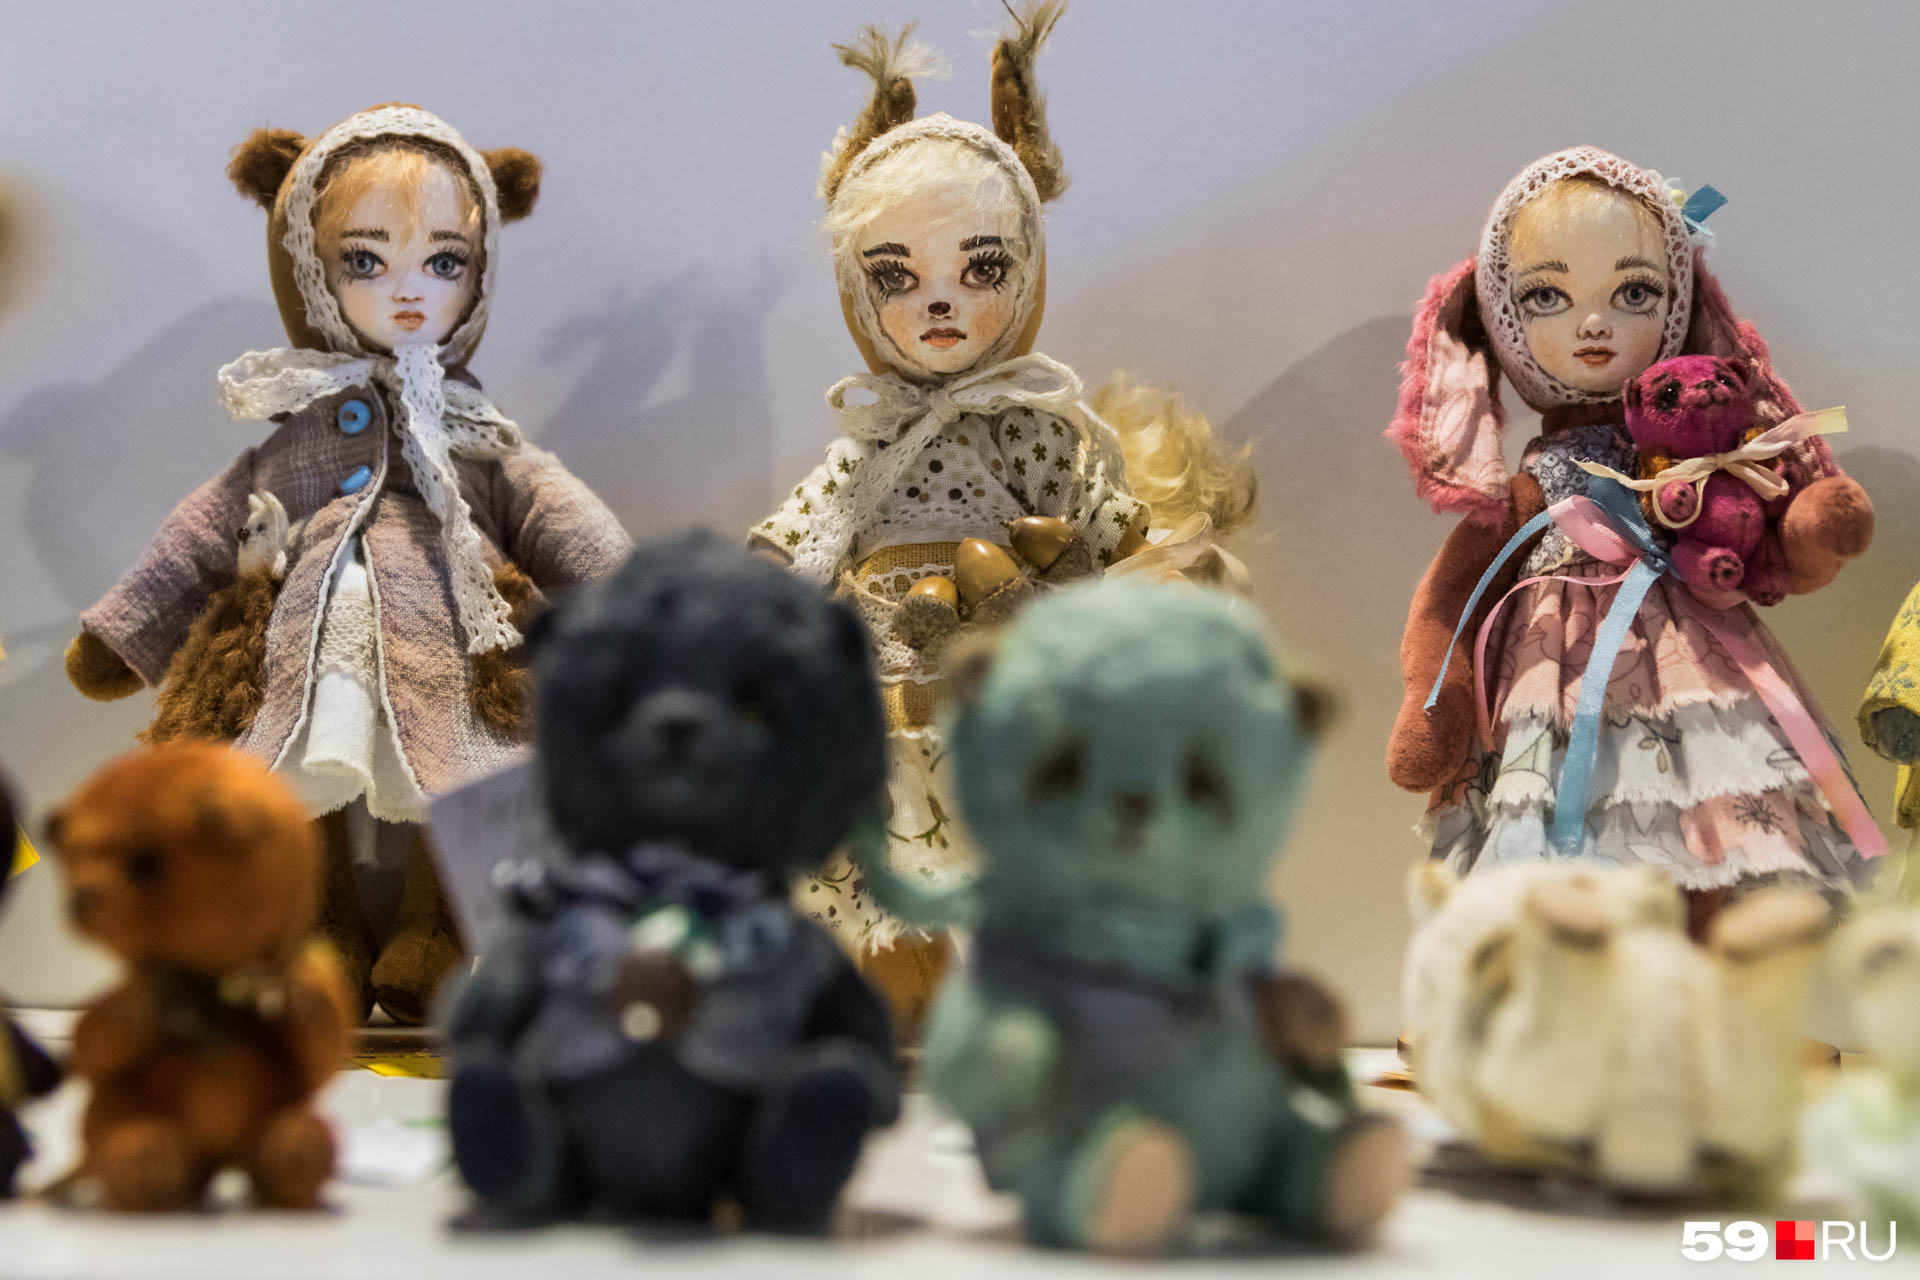 Любители авторских кукол обязательно найдут себе будущих любимцев в коллекцию